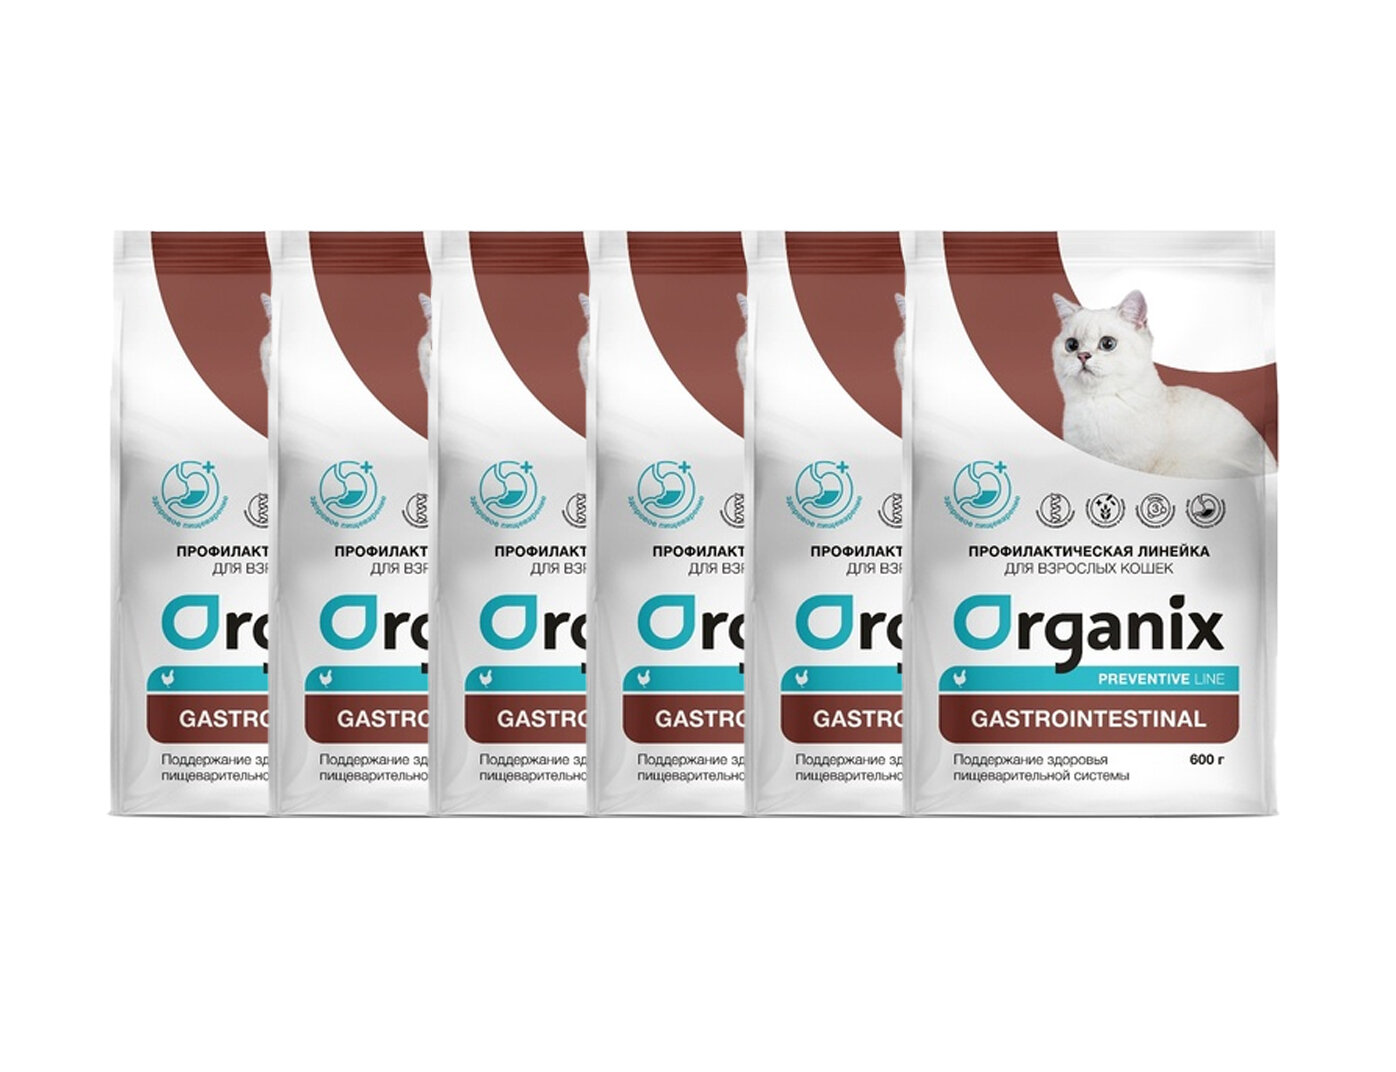 Organix Gastrointestinal сухой корм для кошек "Поддержание здоровья пищеварительной системы" 600 г х 6шт.